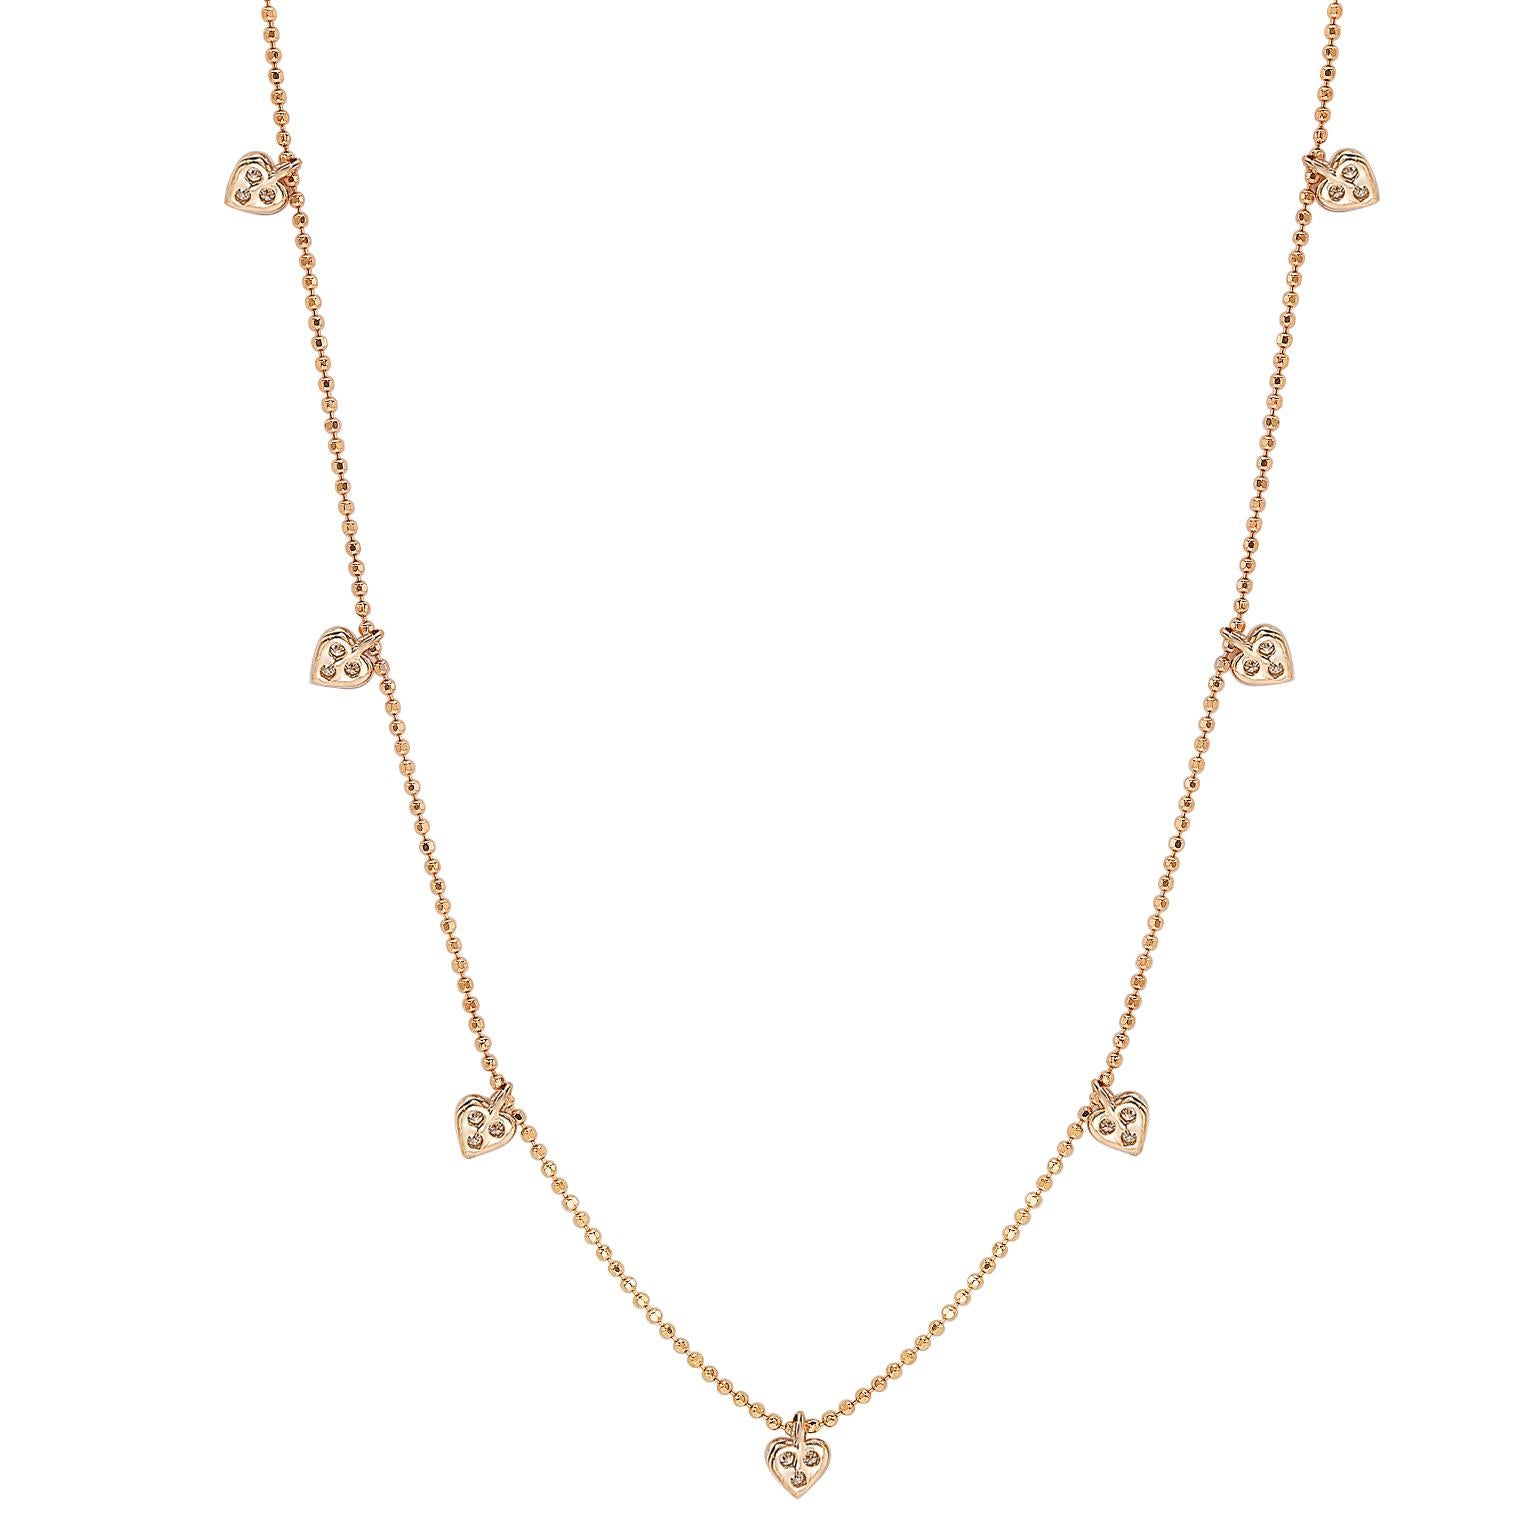 Ce collier unique en forme de cœur à station de diamants de Suzy Levian présente des diamants de taille ronde sur une monture en or rose 14 carats. Ce magnifique collier contient 21 diamants blancs de taille ronde totalisant .26cttw. Le collier